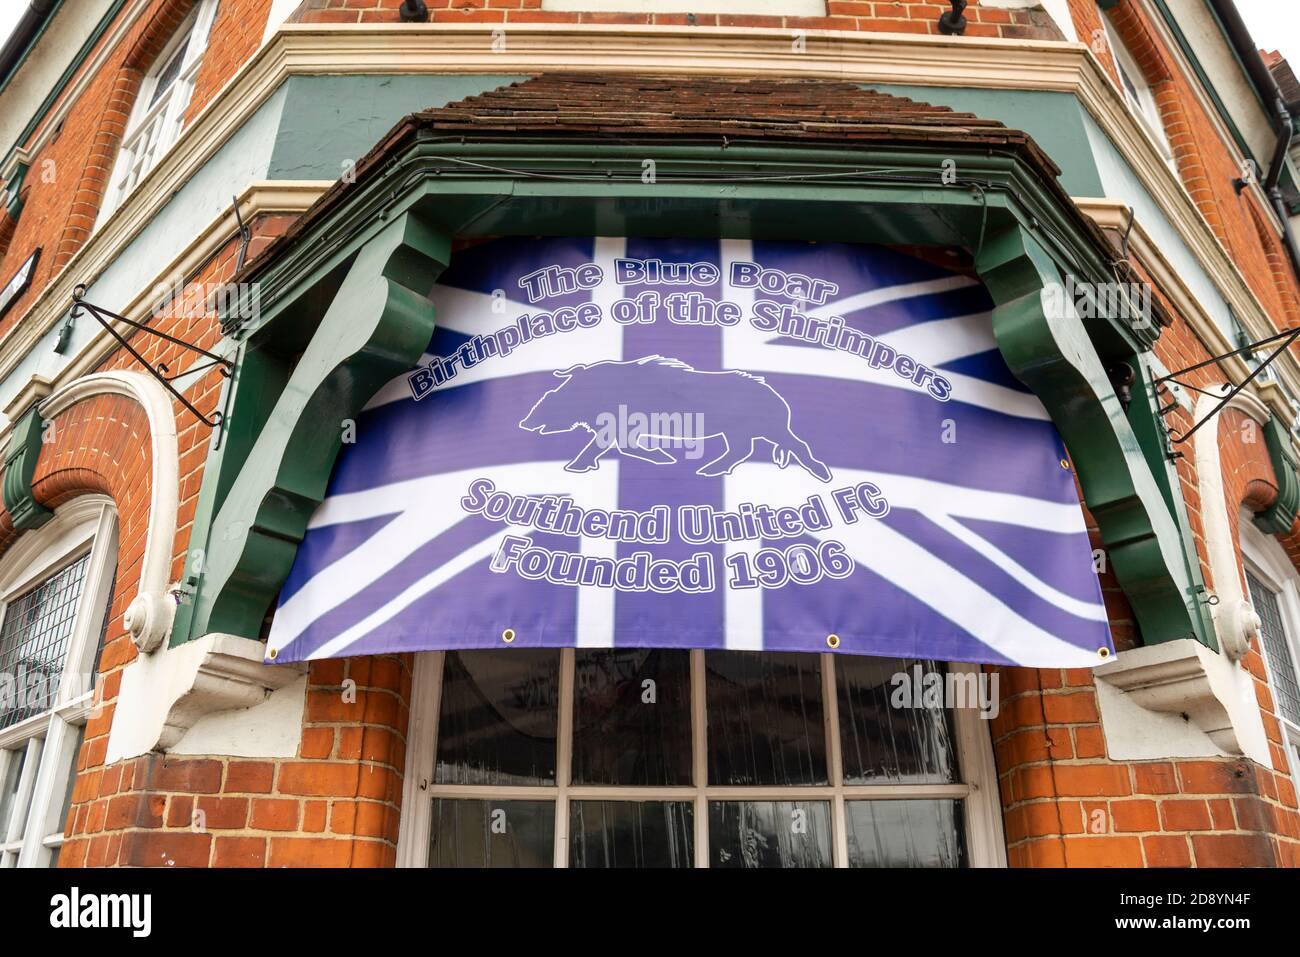 Das Blue Boar Pub in Southend on Sea, Essex, Großbritannien, ist der Geburtsort der Fußballmannschaft von Southend United. Gegründet 1906. Shrimper. Alarmmeldung Stockfoto